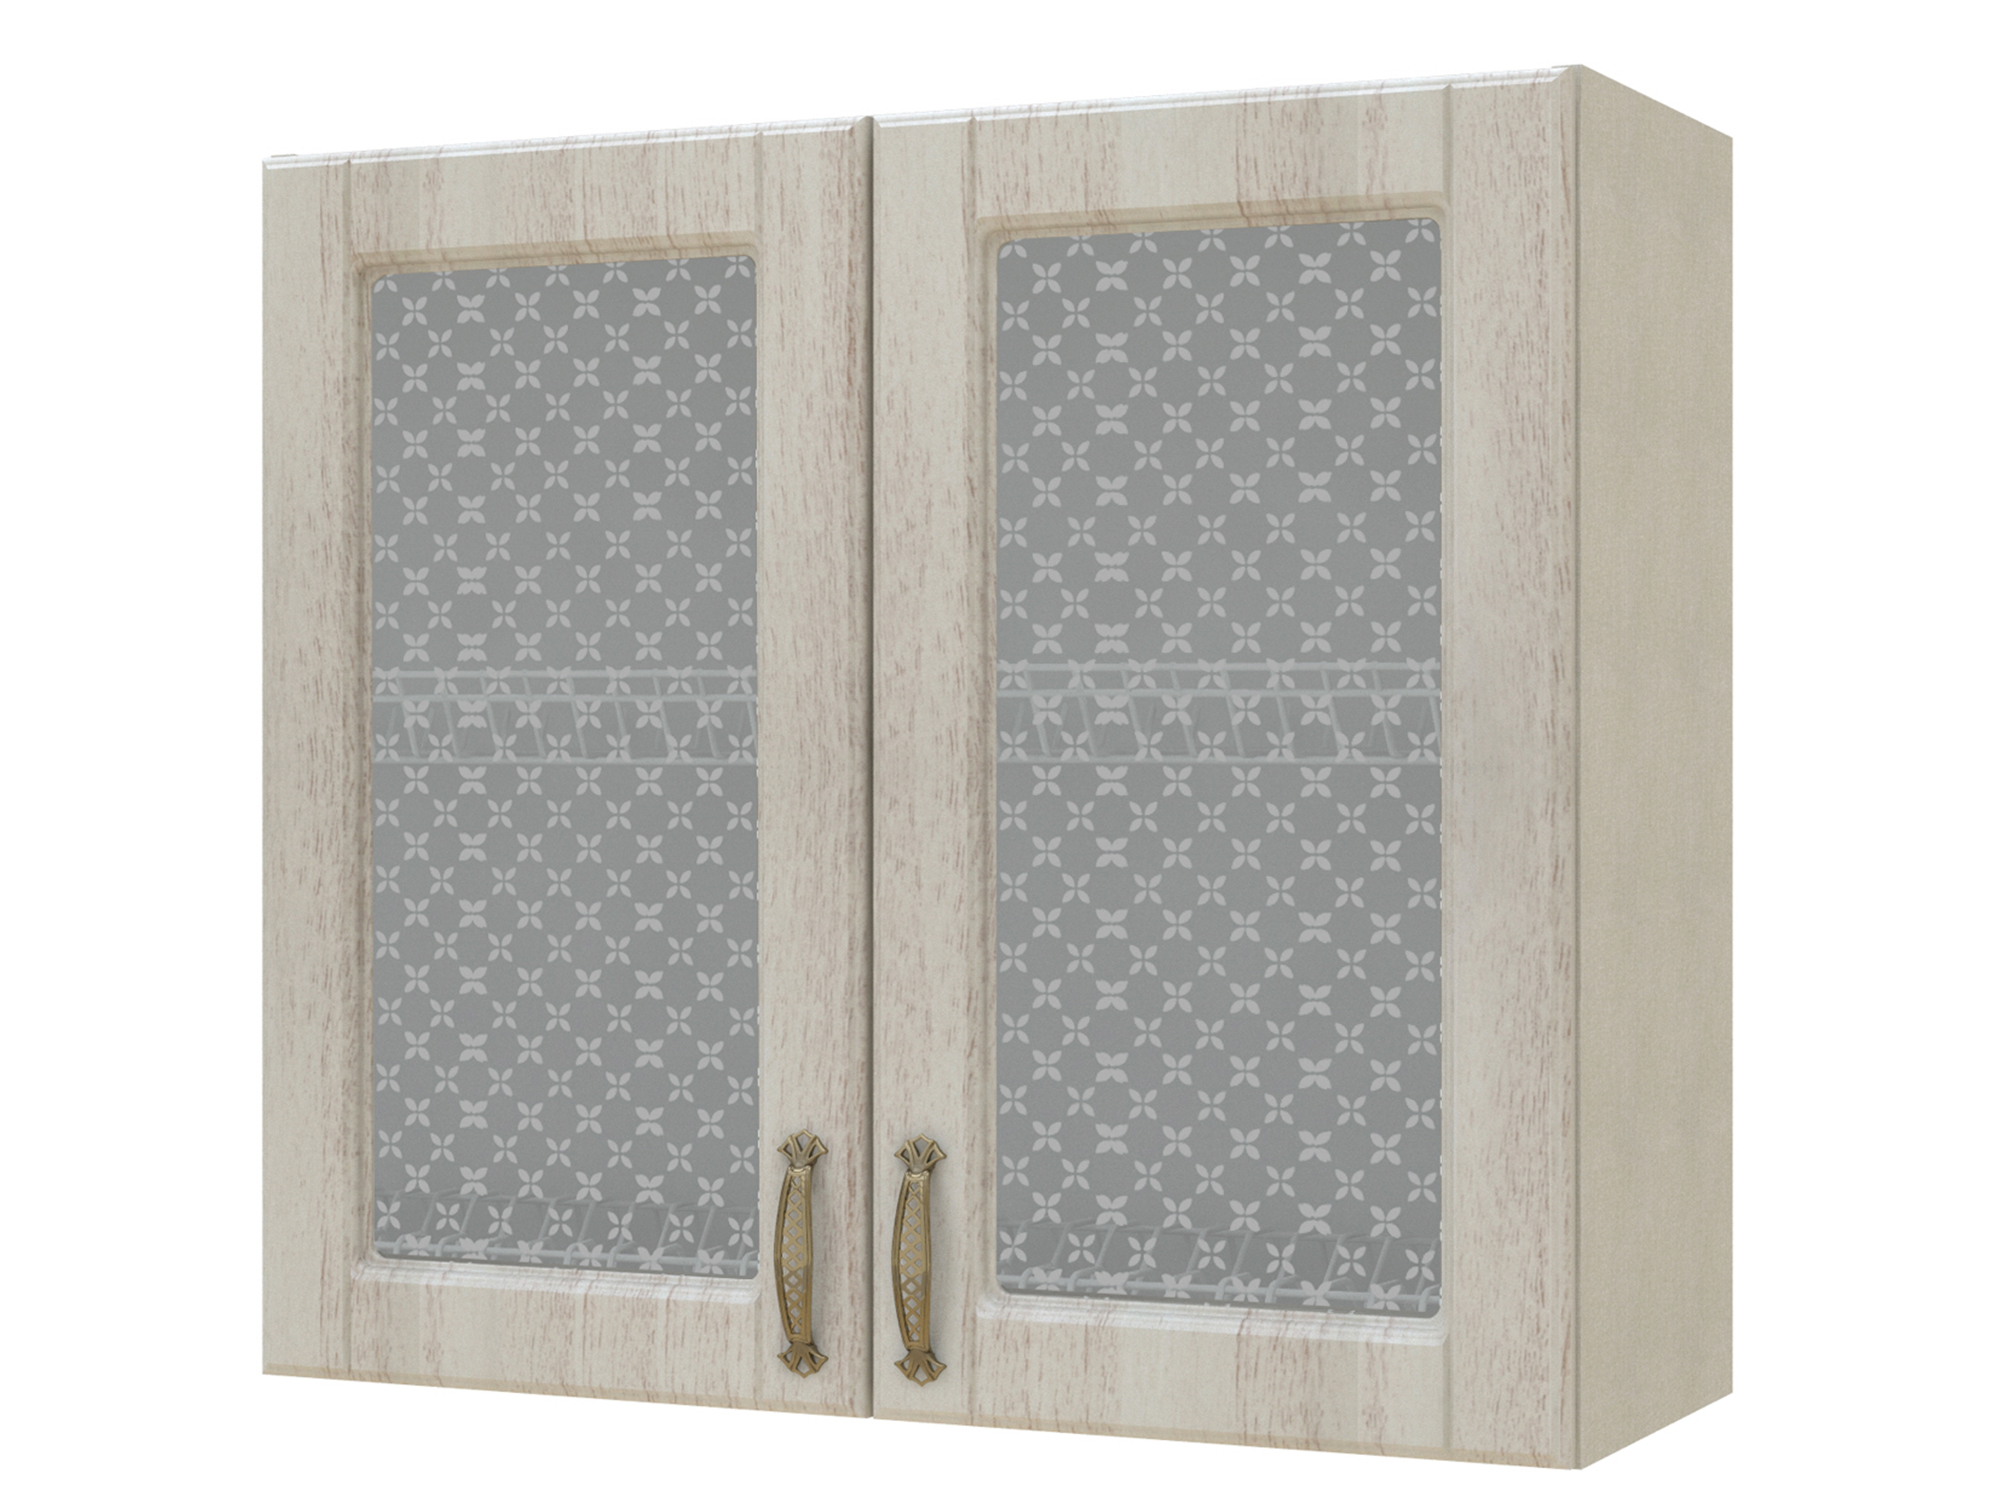 Шкаф-витрина с сушками двухдверный Николь 80 см Кантри, Белый, Бежевый, МДФ, Пленка ПВХ, КДСП